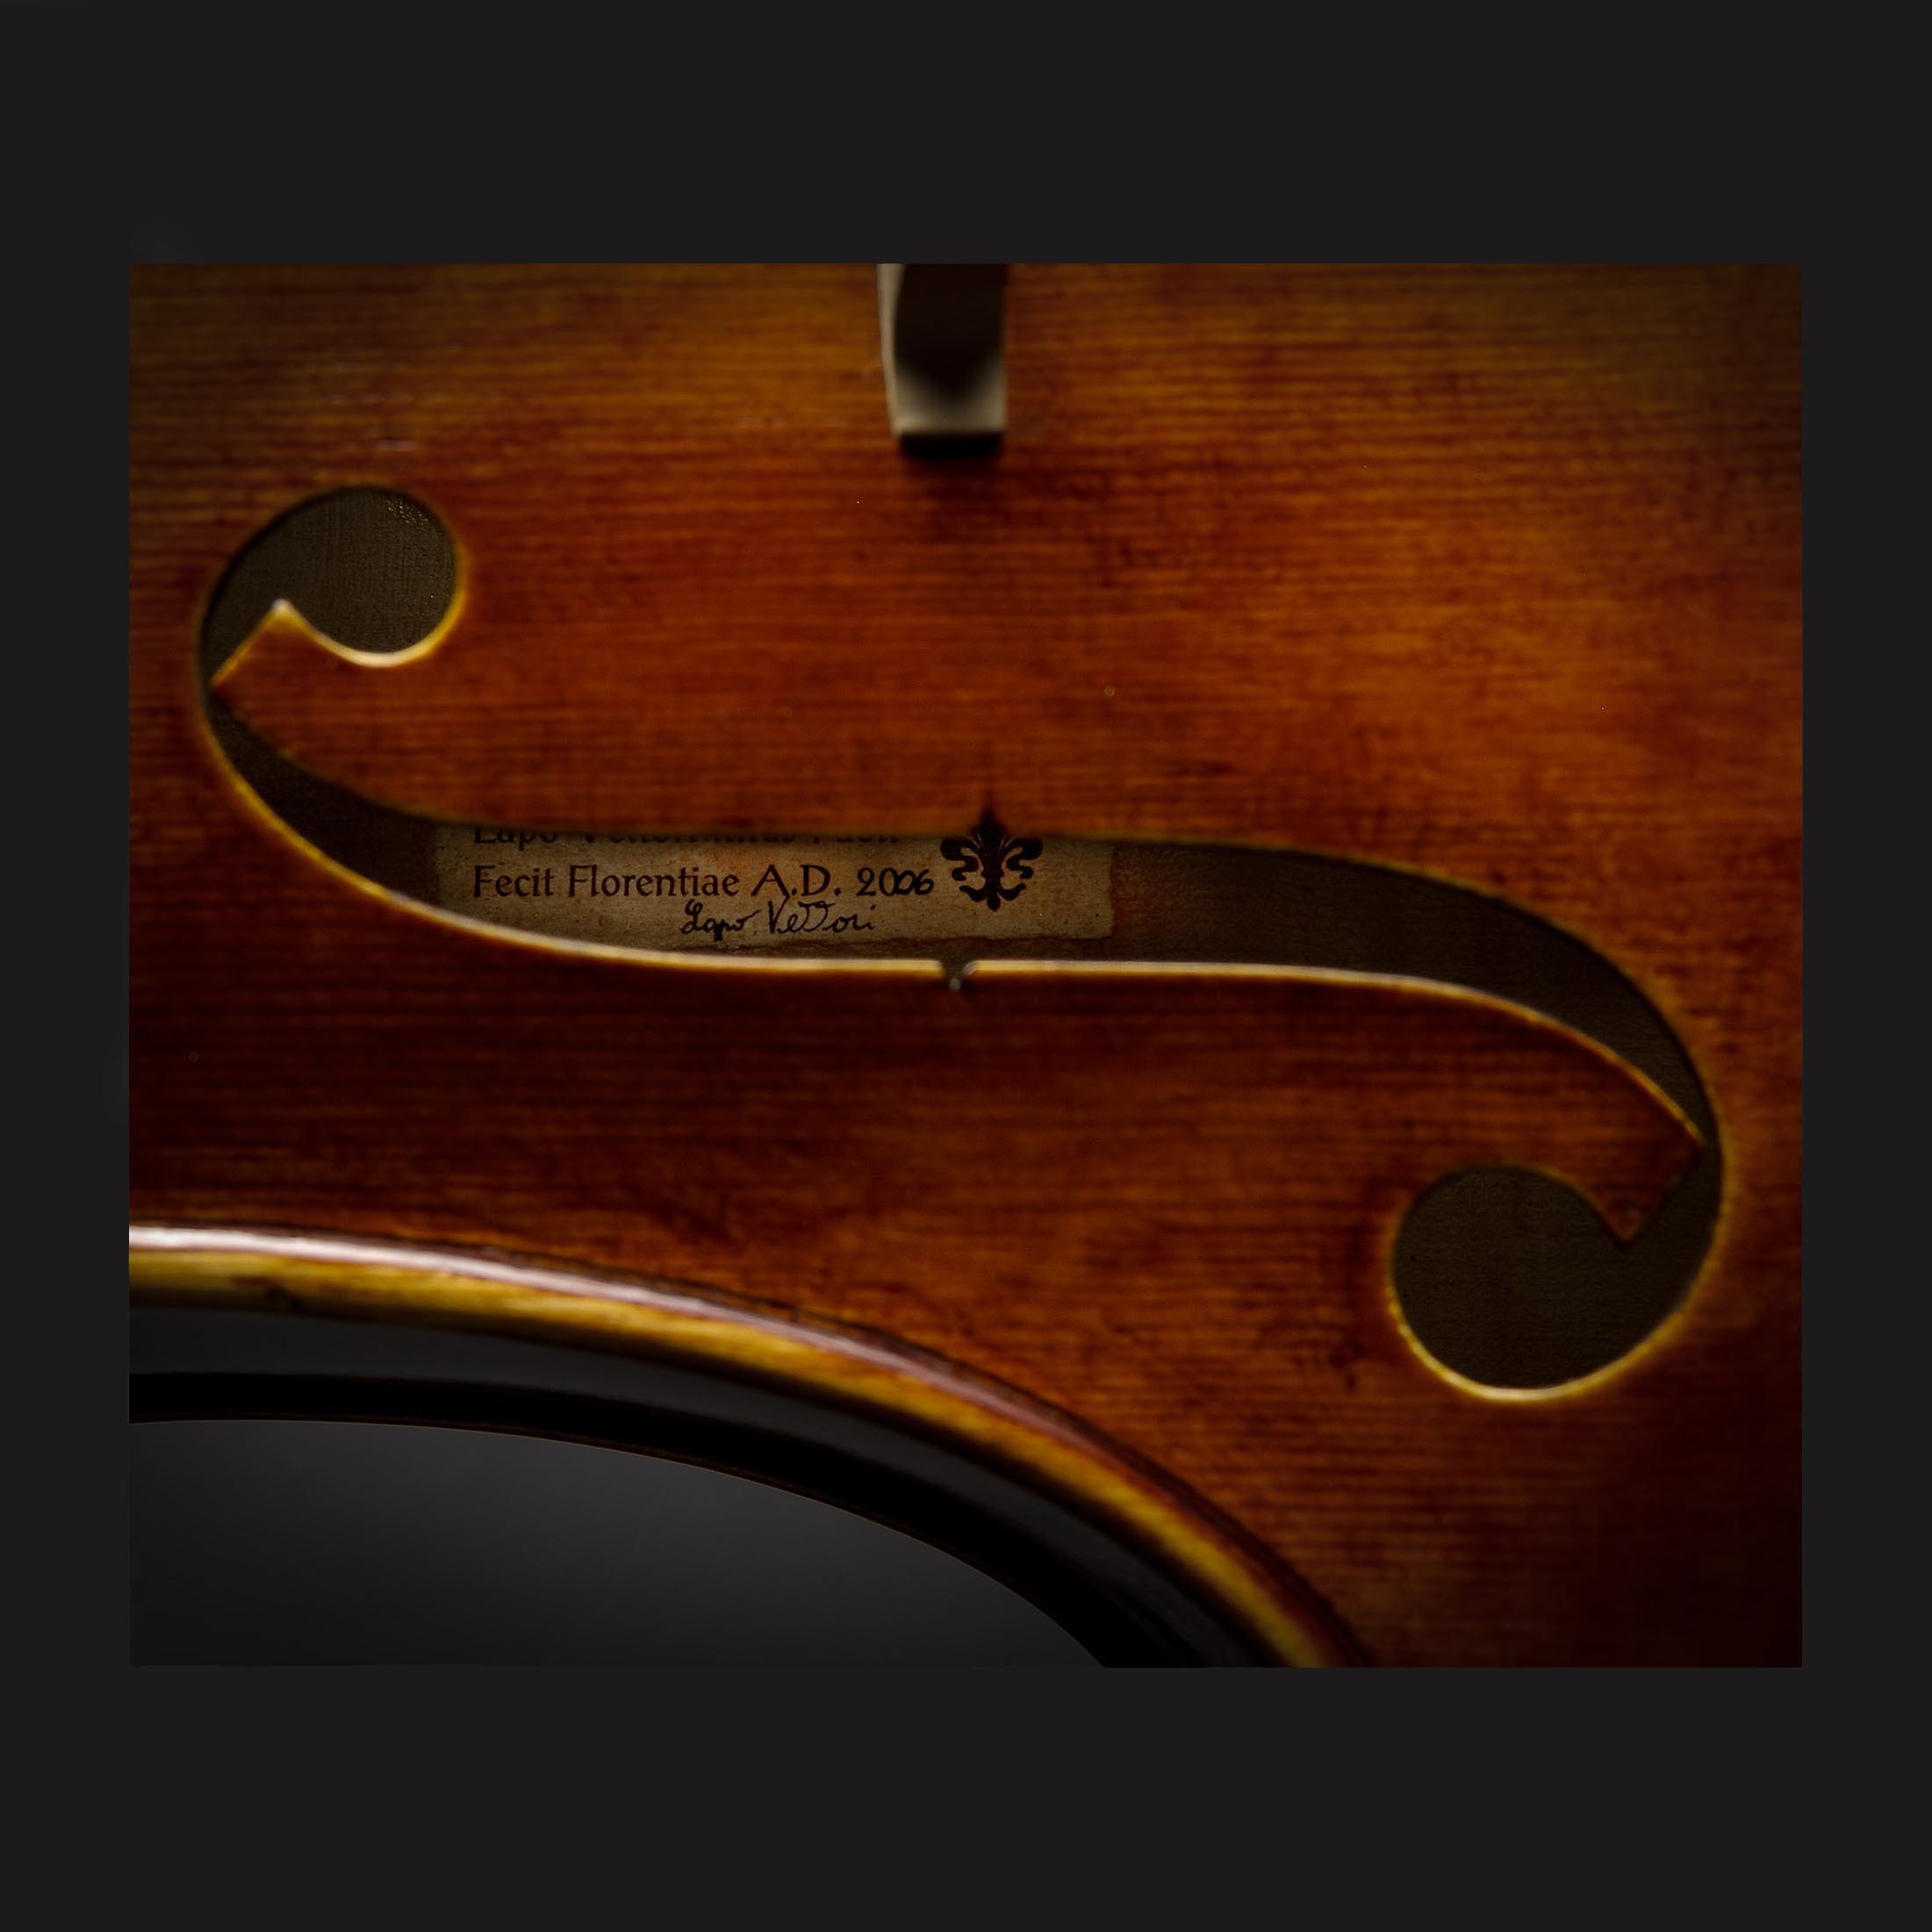 Antonio Stradivari A. Stradivari, Cremona 1726 “Marquis de Corberon“ - Image 6